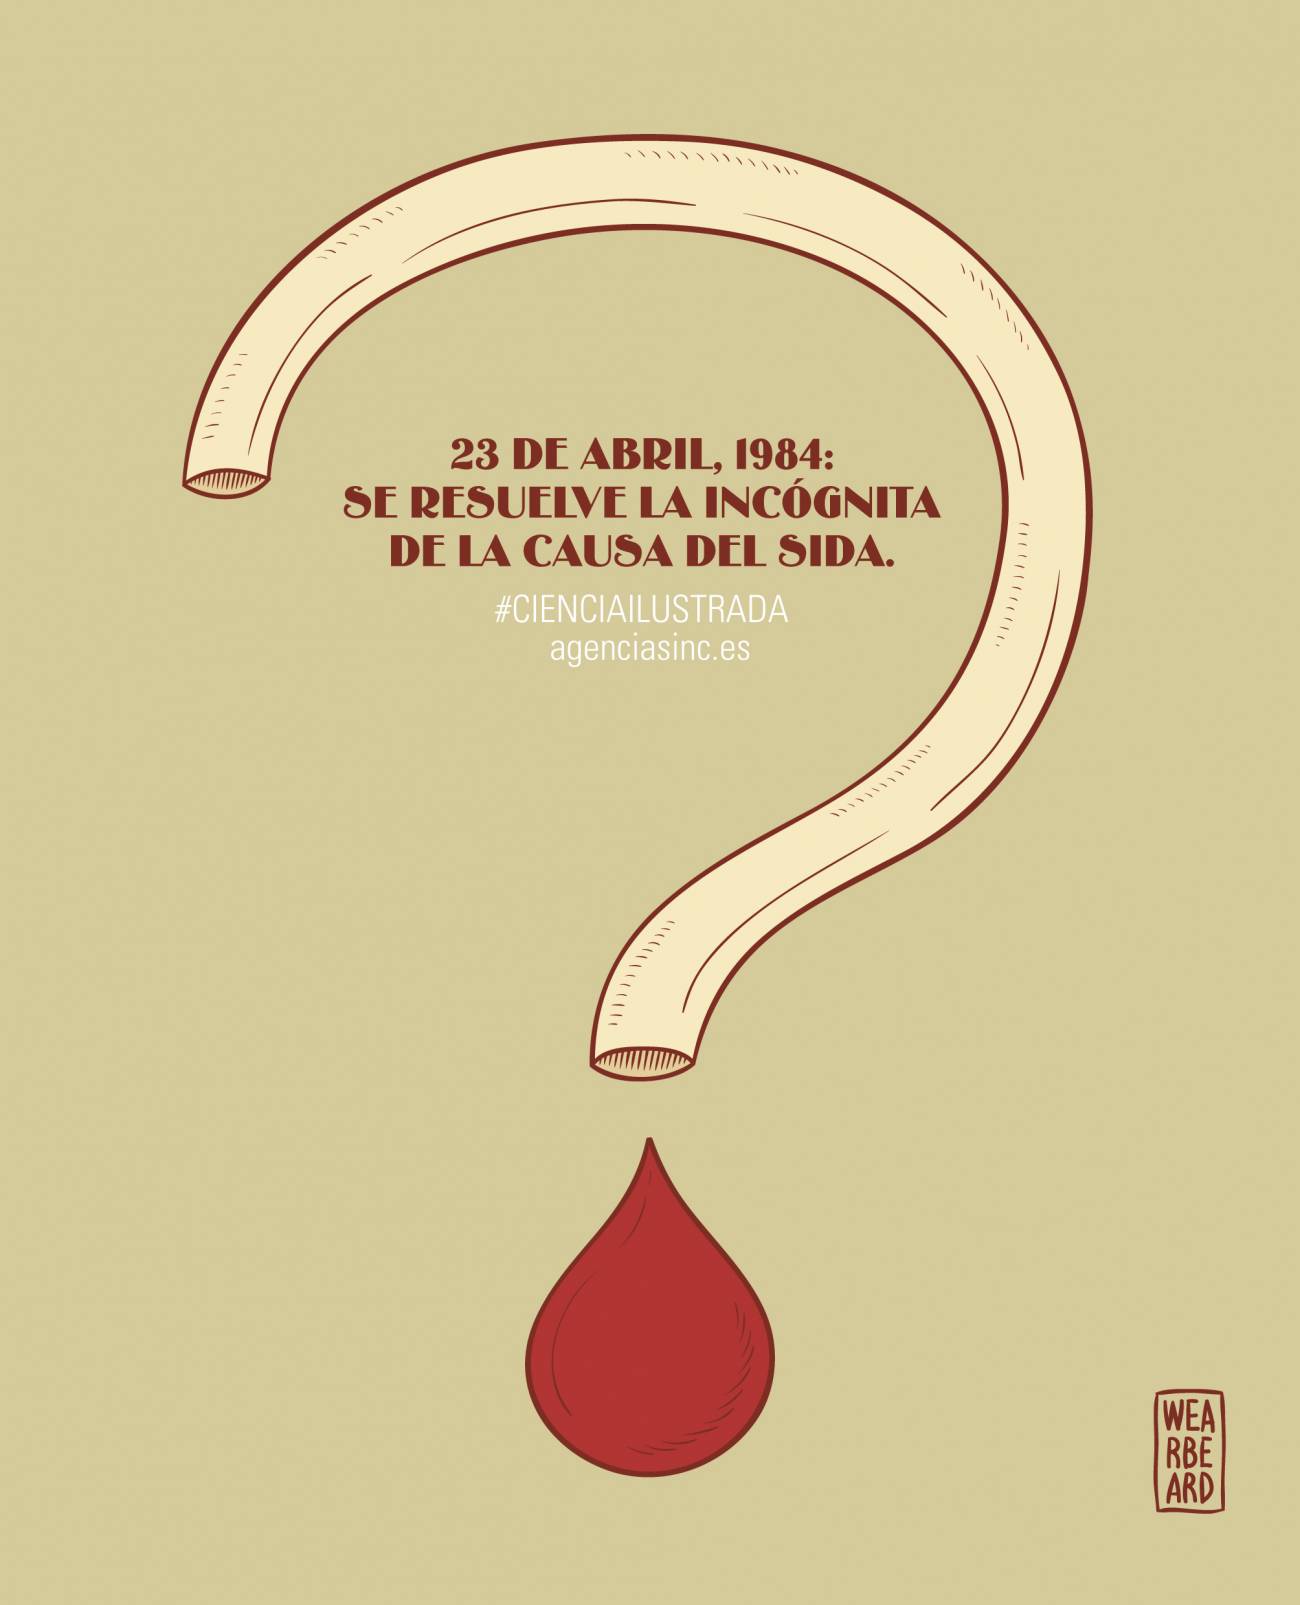 Hace 30 años Robert Gallo anunciaba el descubrimiento de la causa del sida. / SINC 